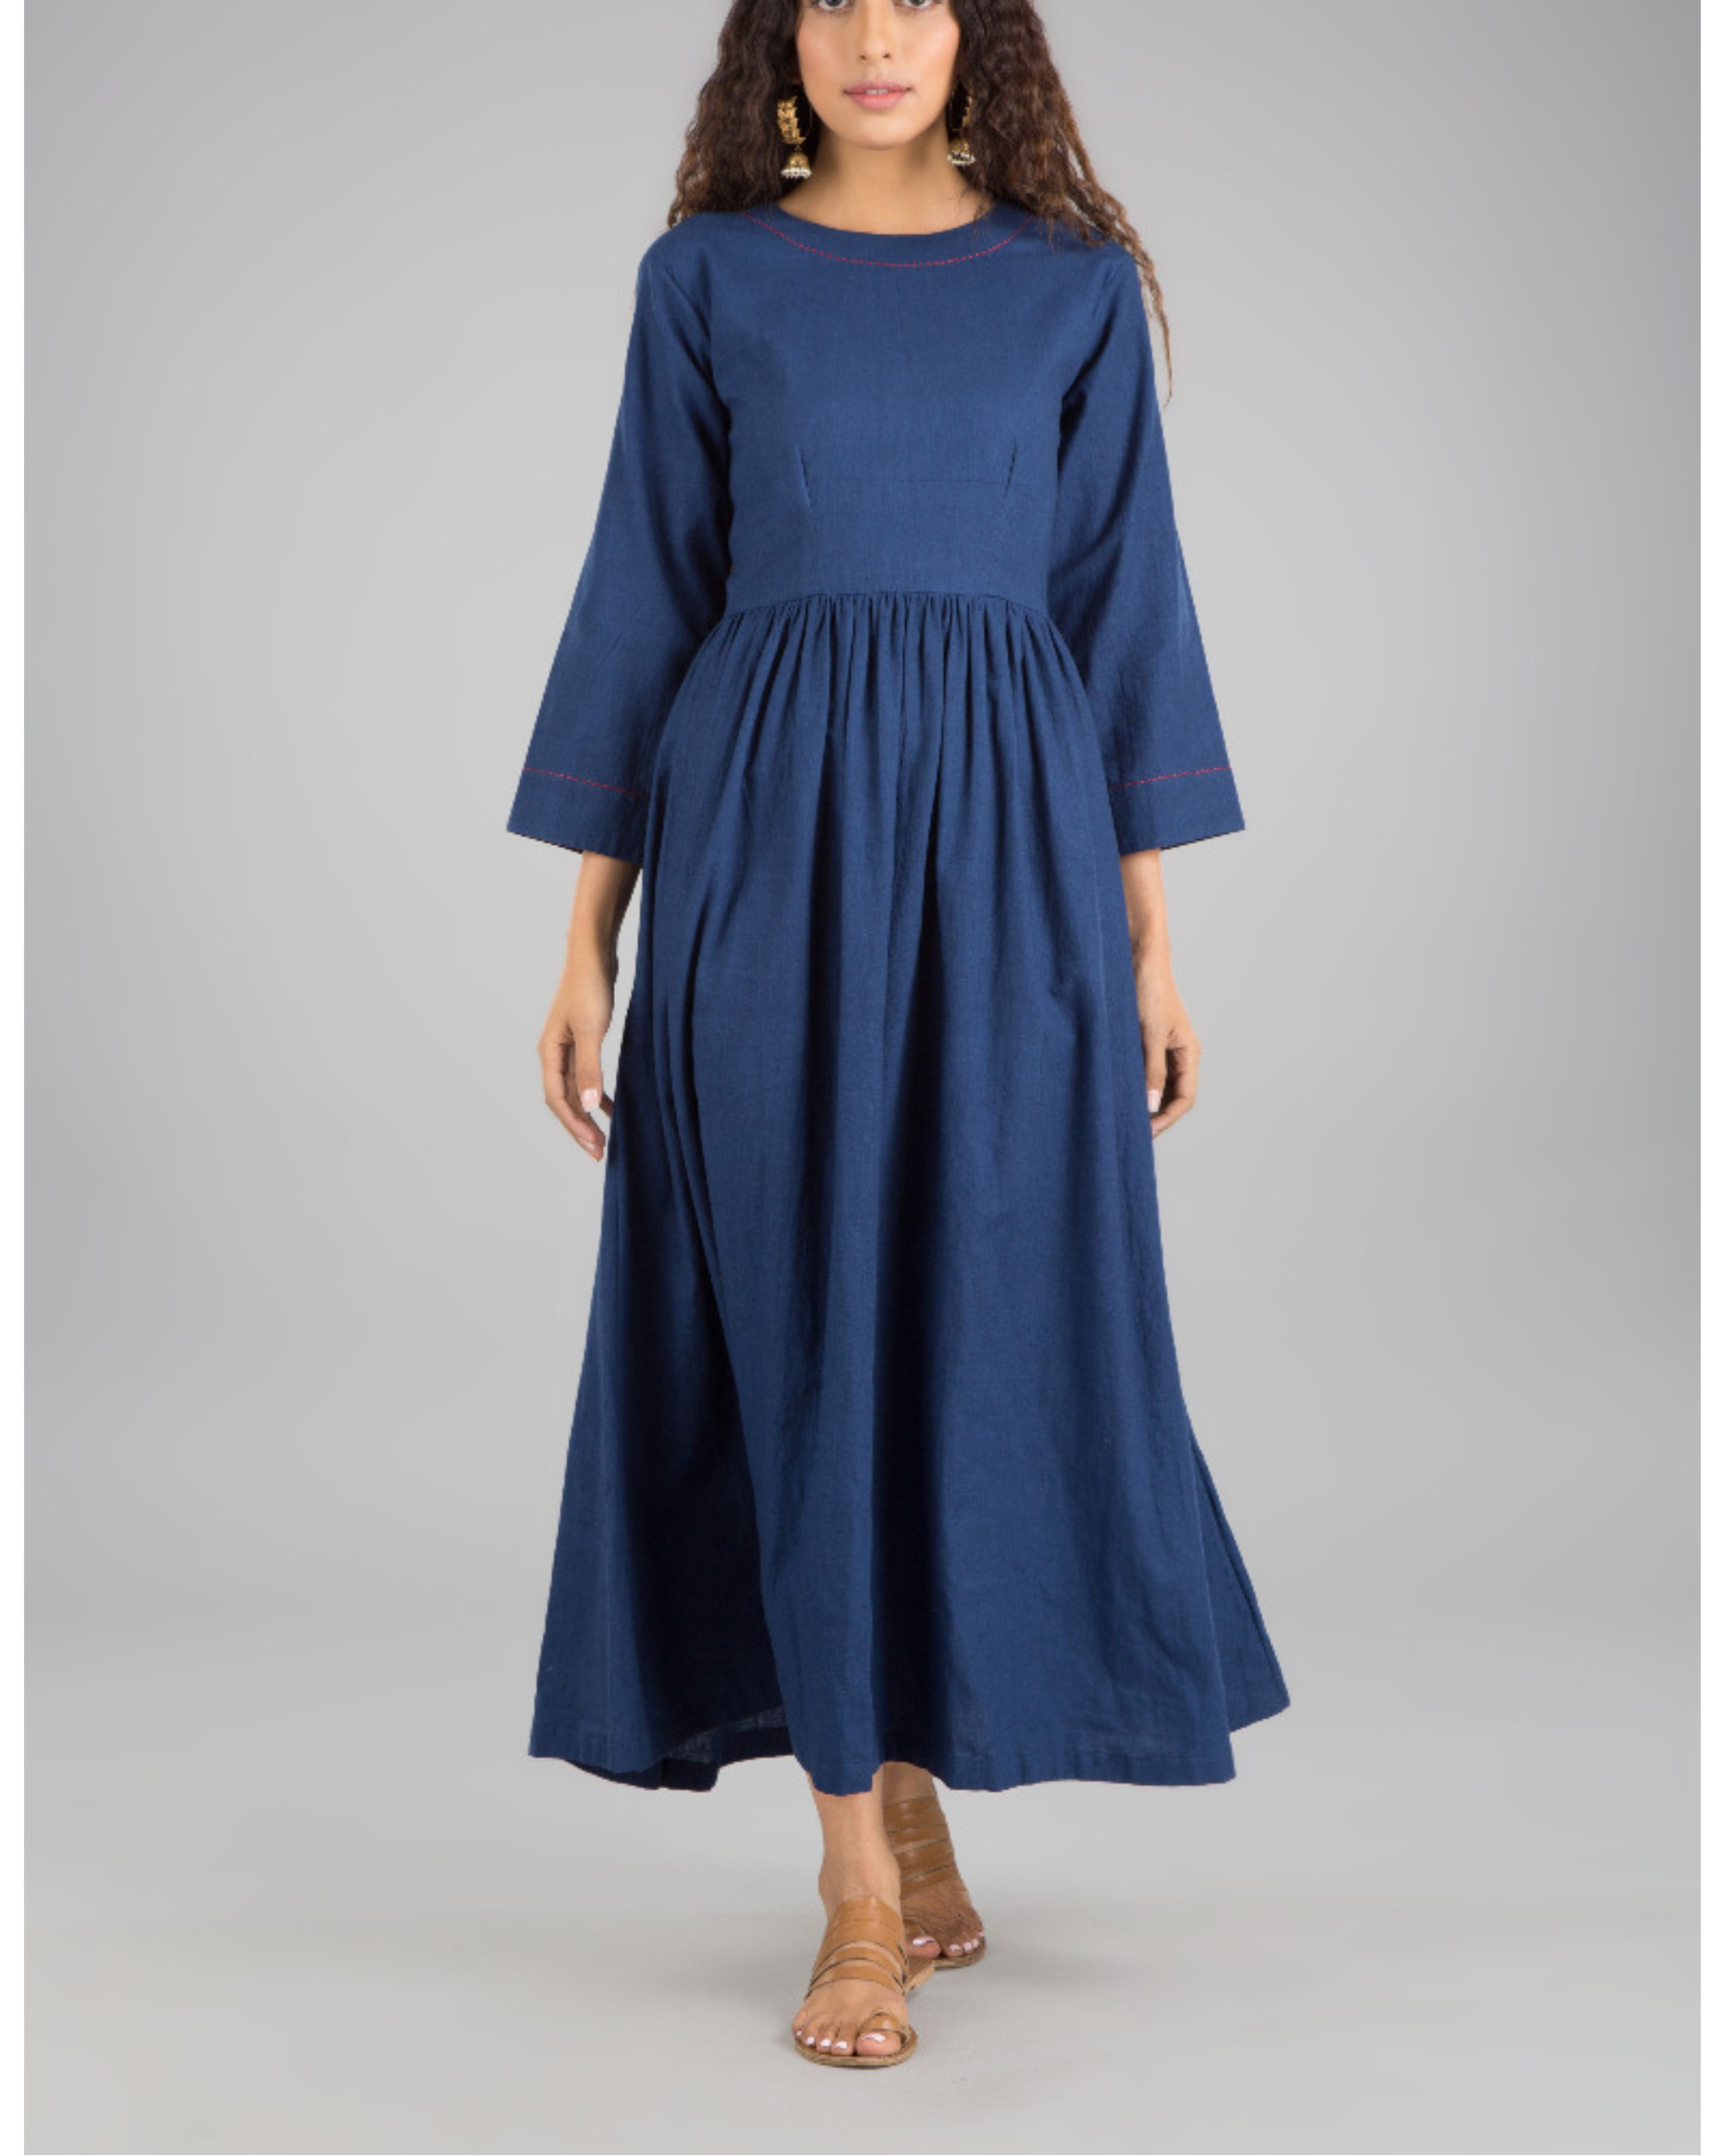 Plain indigo dress by Vasstram | The Secret Label